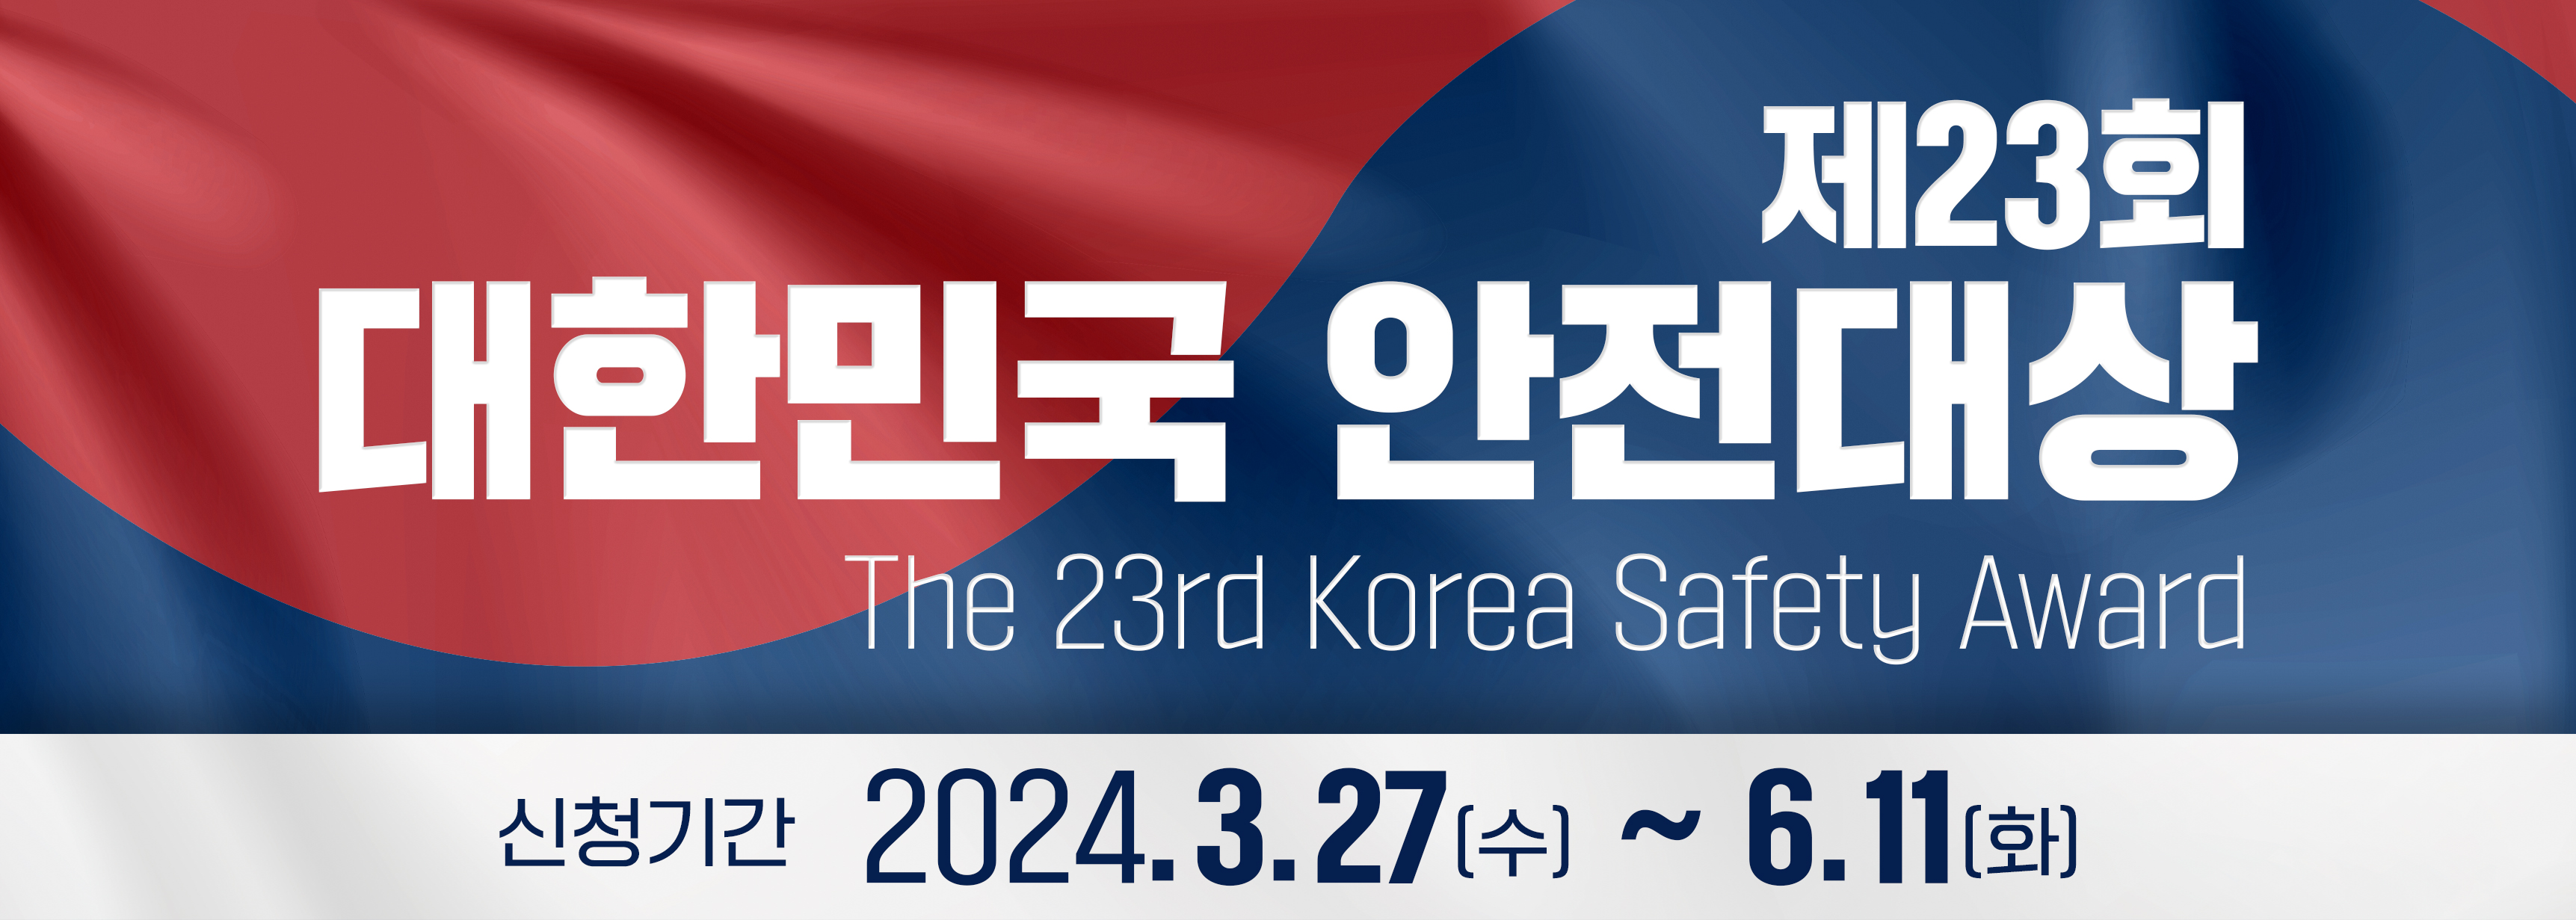 제23회 대한민국 안전대상 참여 홍보